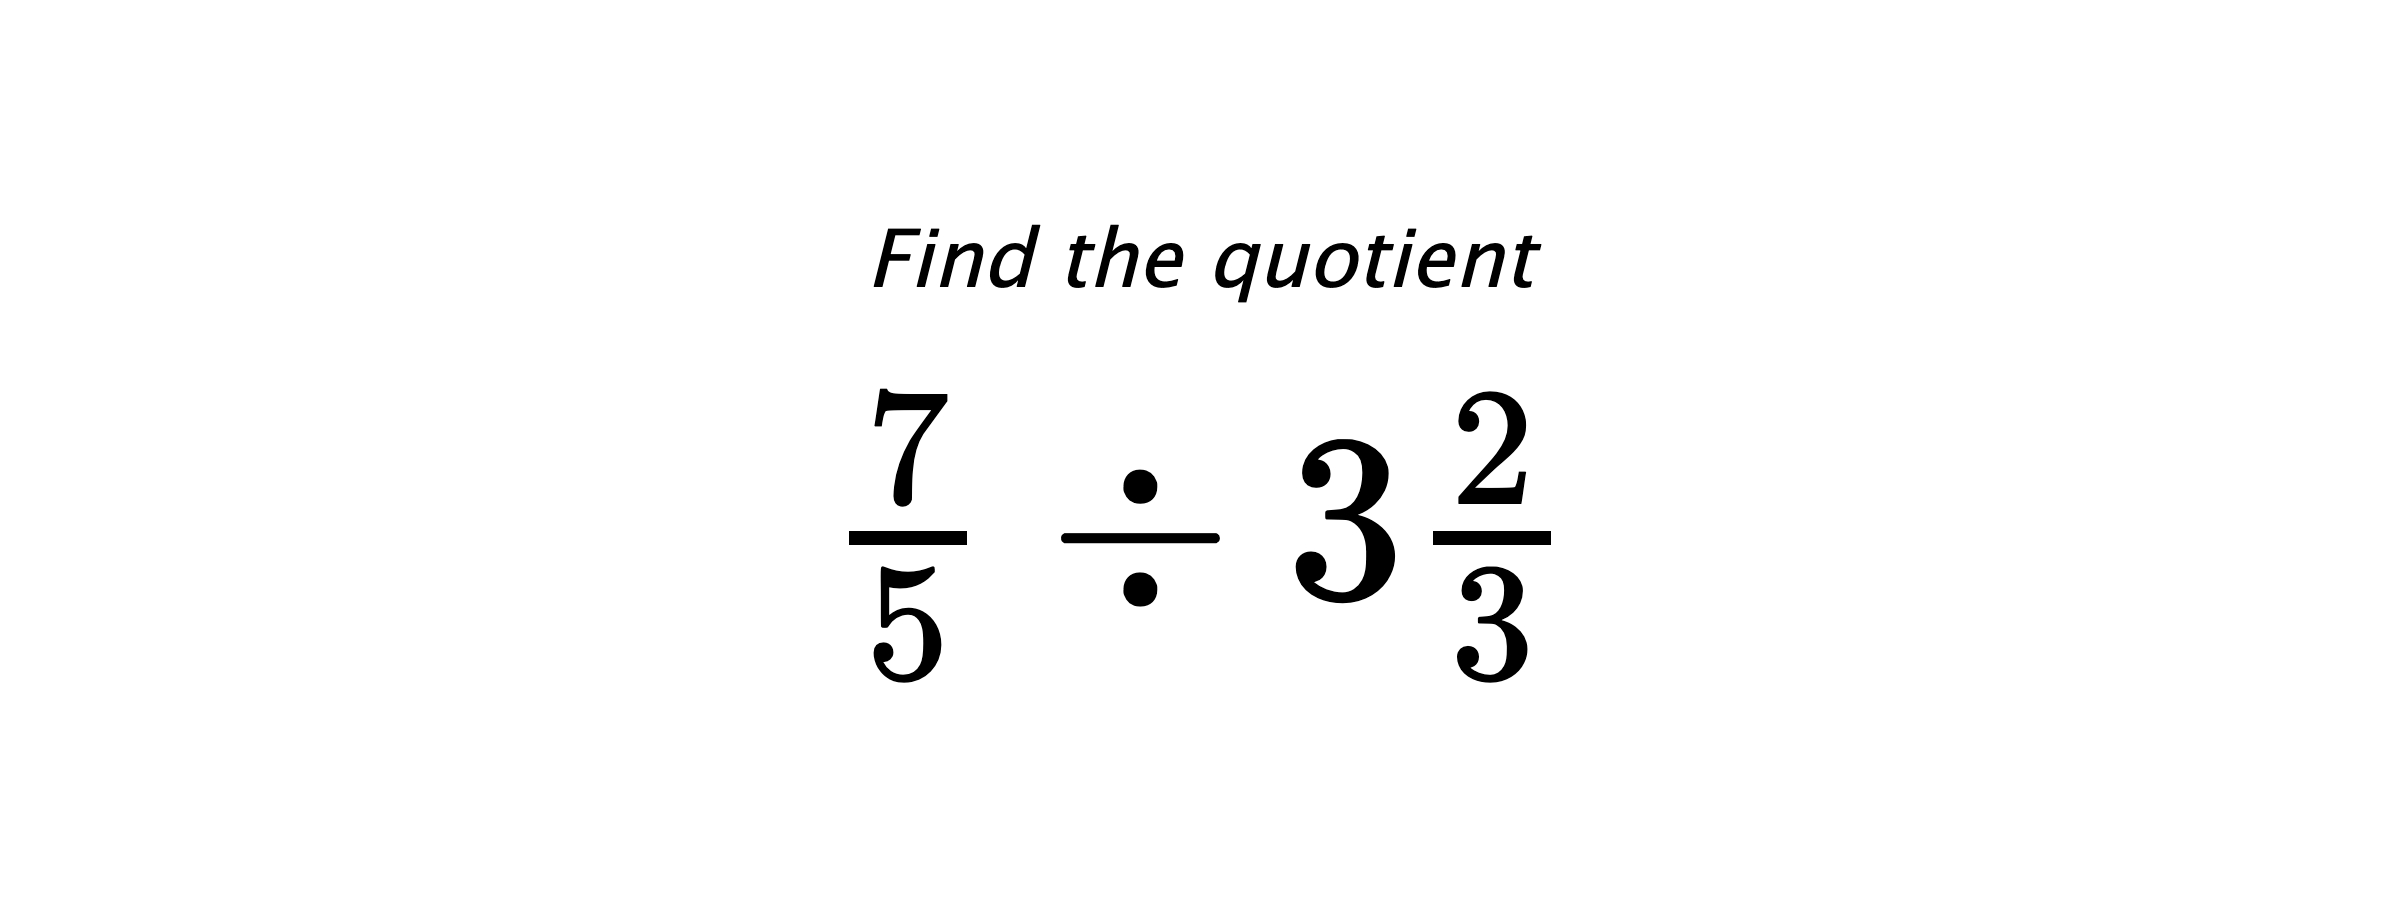 Find the quotient $ \frac{7}{5} \div 3\frac{2}{3} $